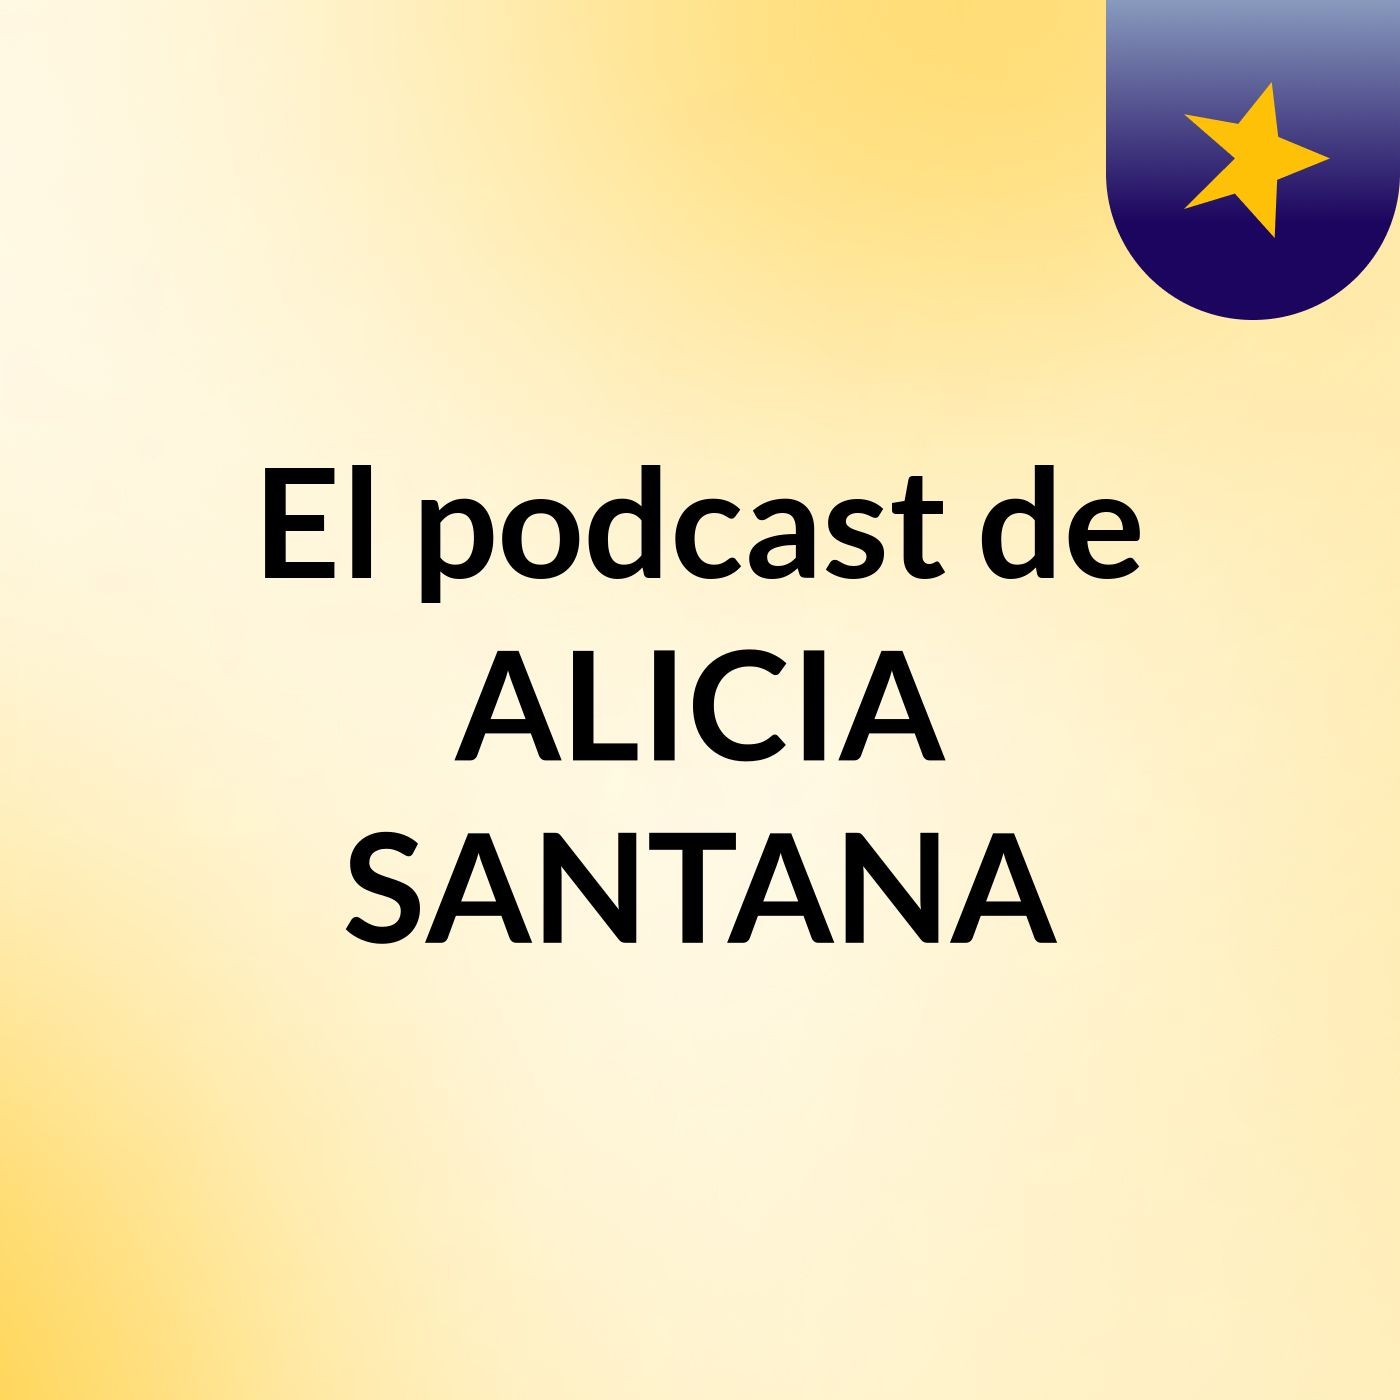 El podcast de ALICIA SANTANA